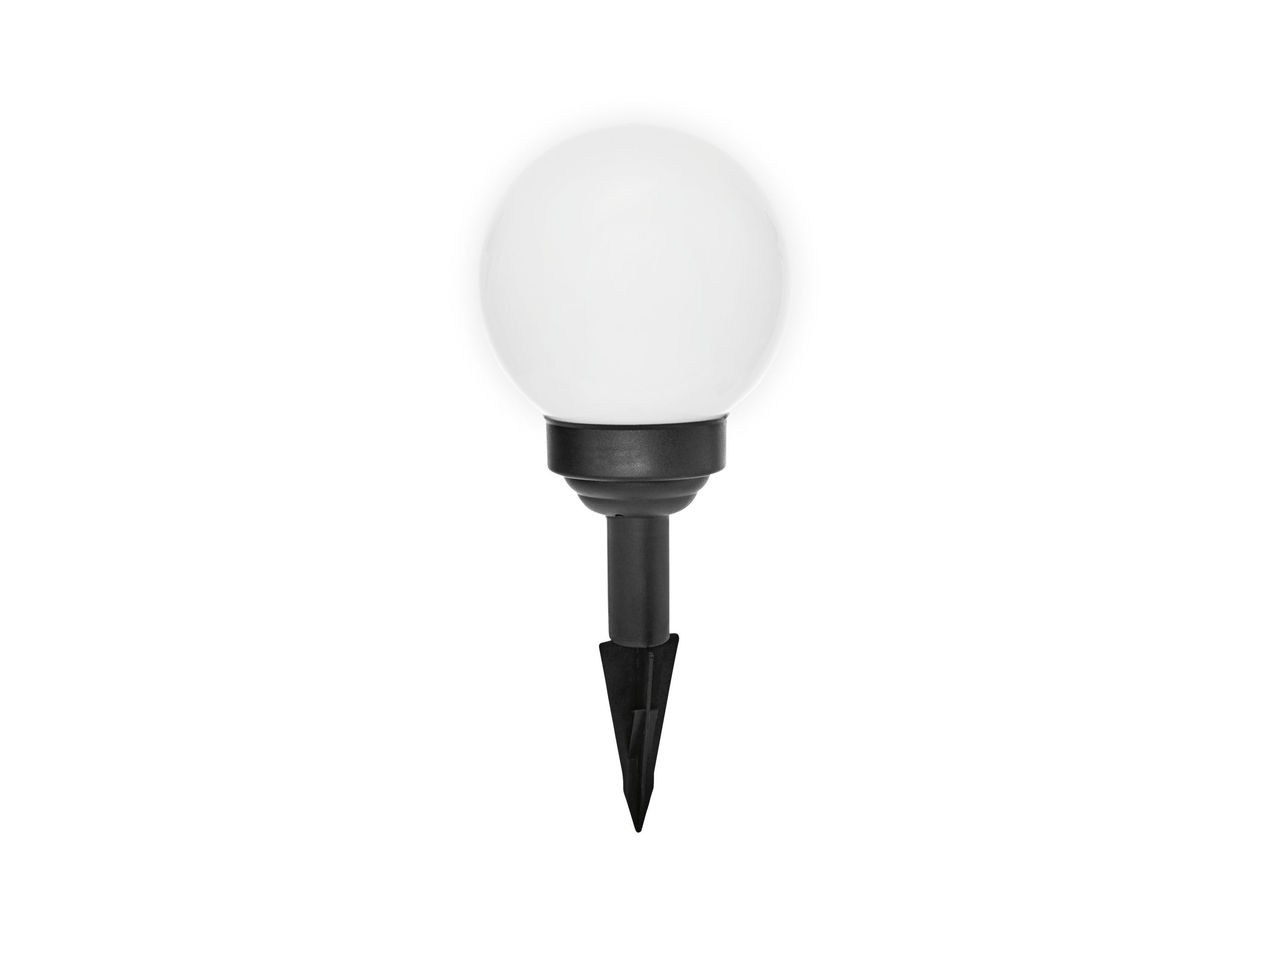 15cm Solar-Powered LED Light Ball